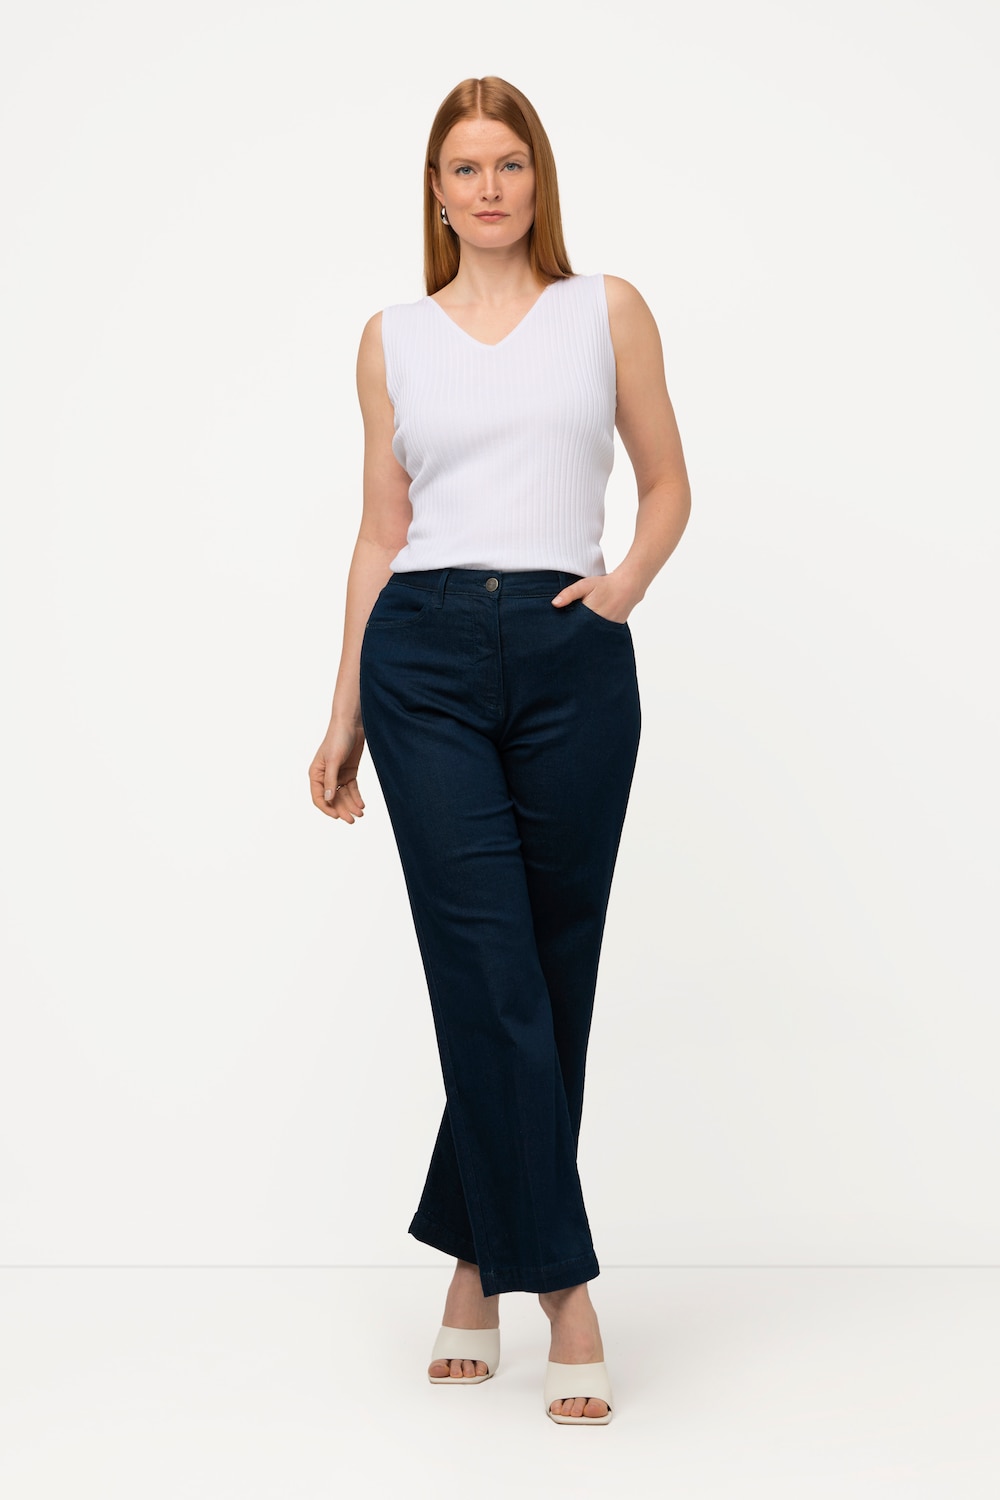 Grote Maten jeans, Dames, blauw, Maat: 31, Katoen/Synthetische vezels, Ulla Popken